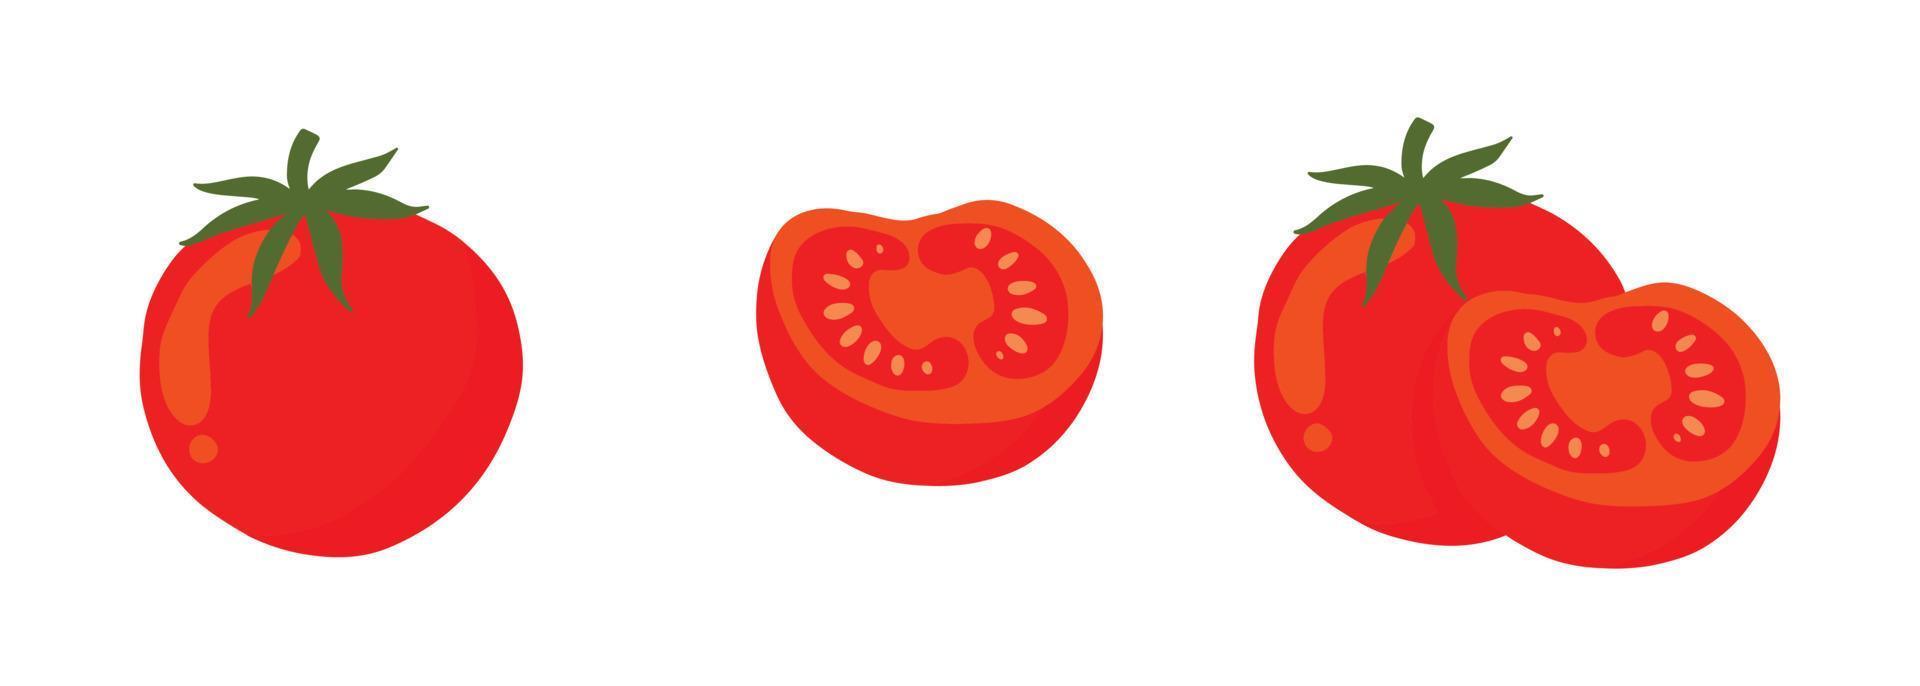 conjunto de tomate ilustración en grupo, rebanada y soltero vector